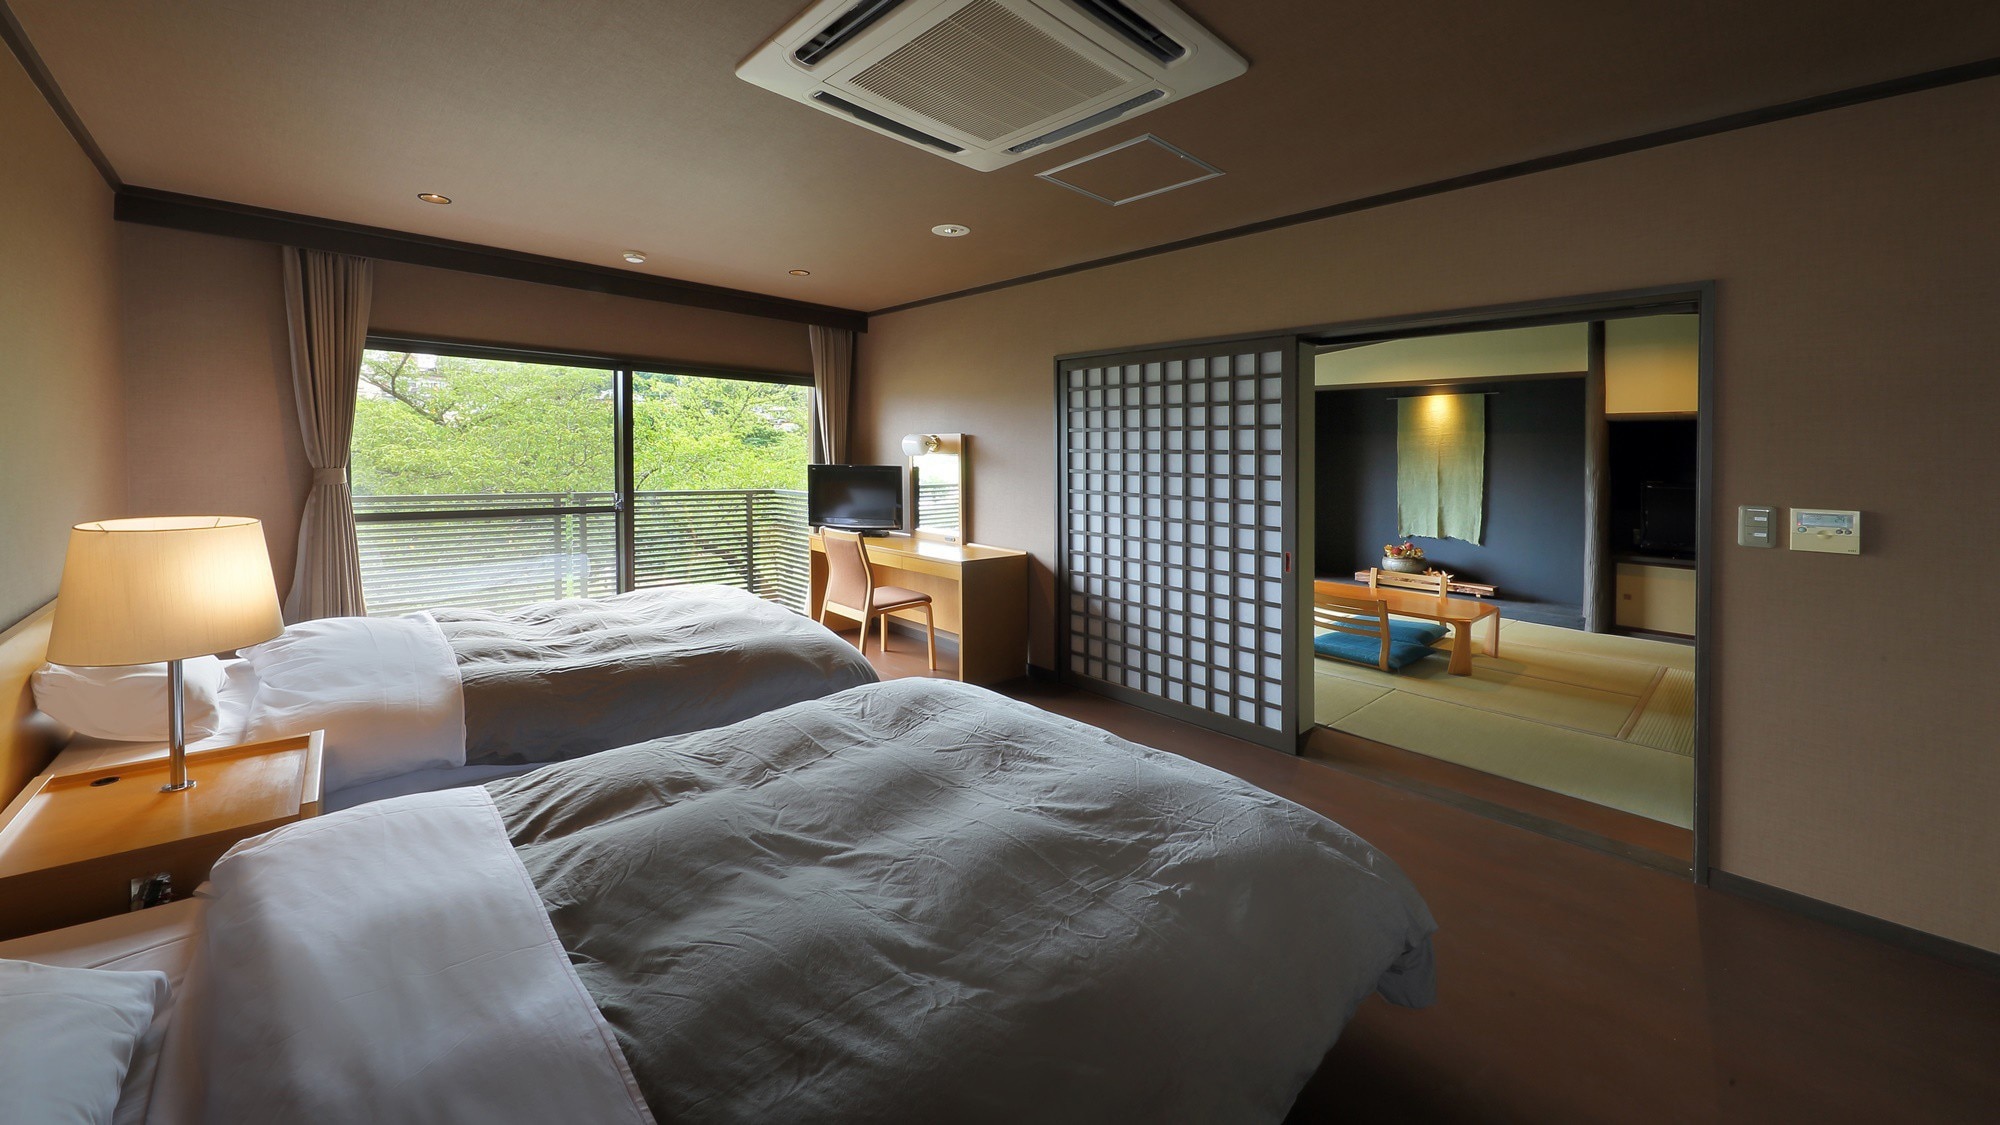 【小型套房】有8张榻榻米的日式房间和西式房间。它有一个室内浴池，因此您可以放松身心。